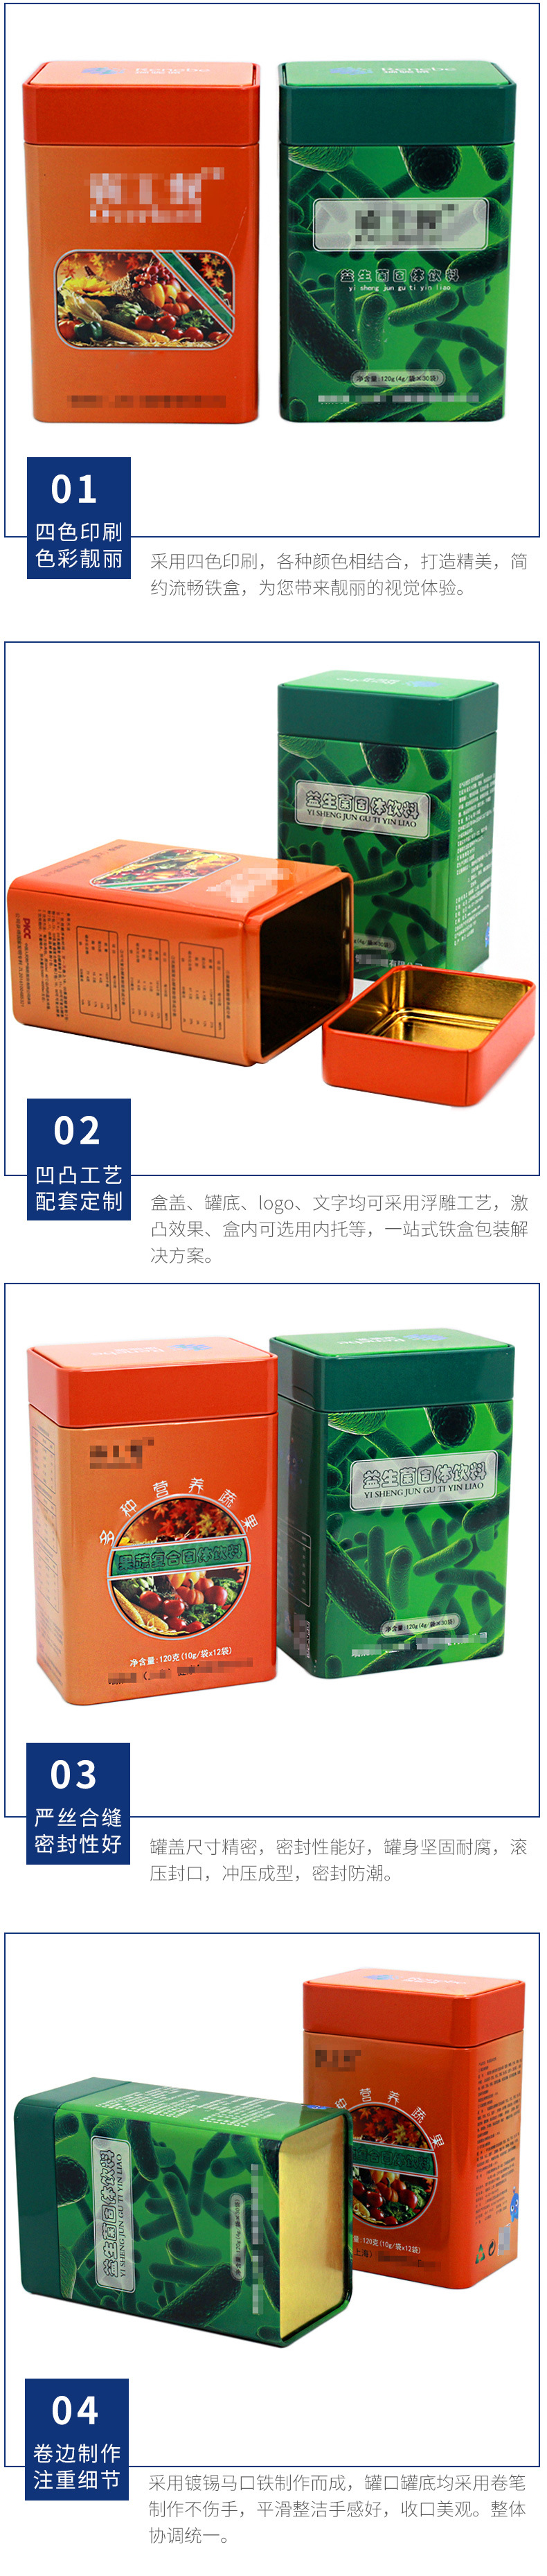 益生菌固体饮料包装铁盒 果蔬复合固体饮料马口铁罐 保健品铁皮罐示例图14